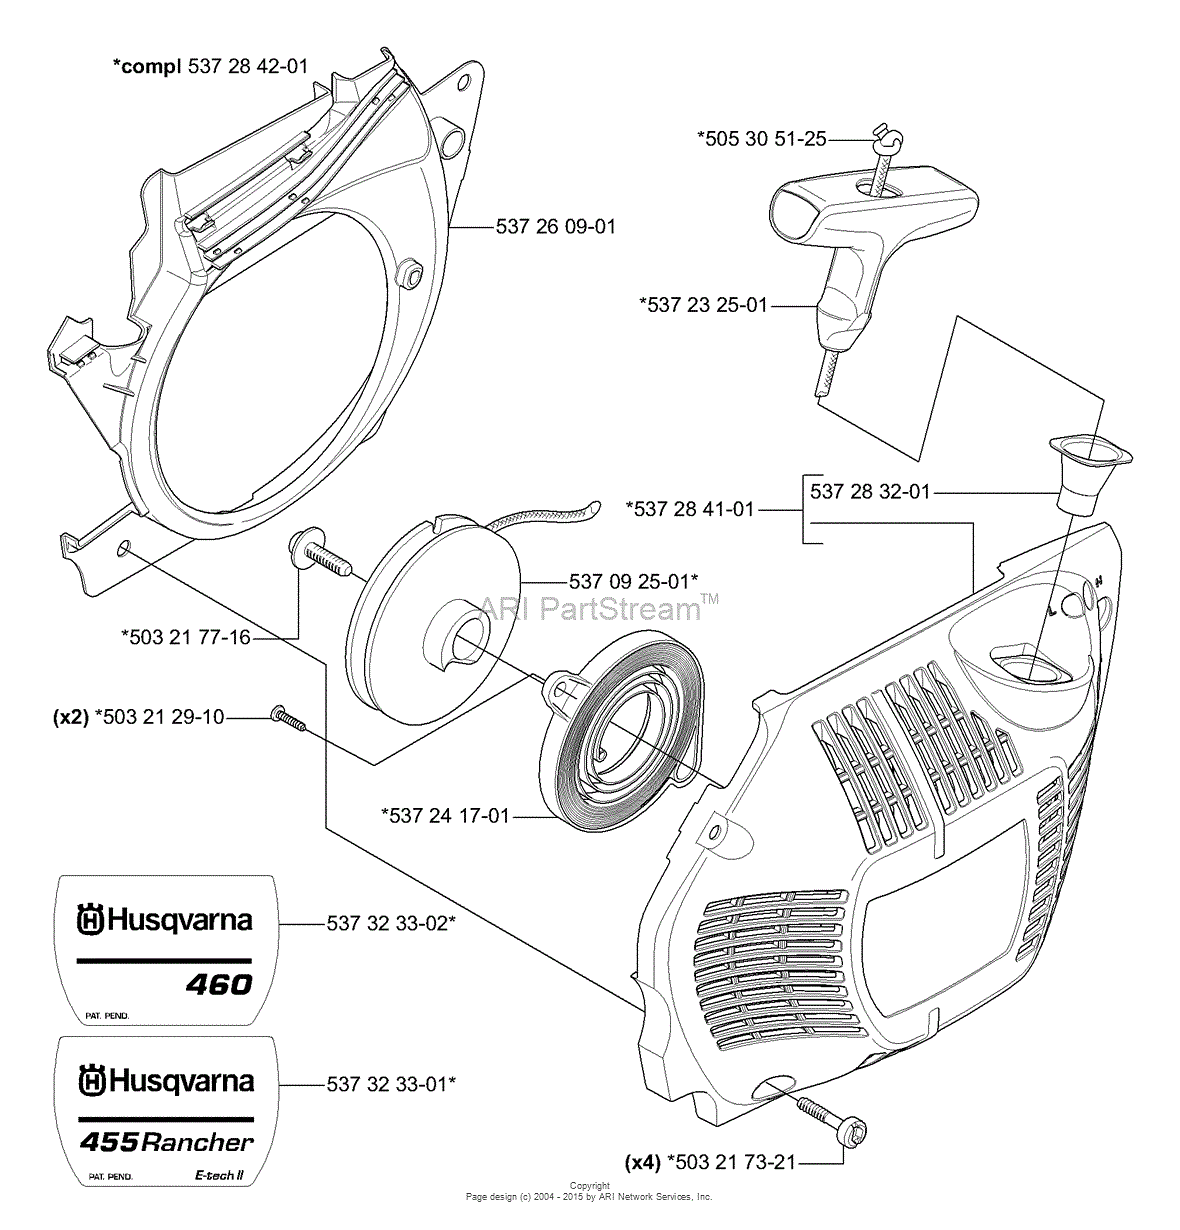 2006 honda rancher parts diagram